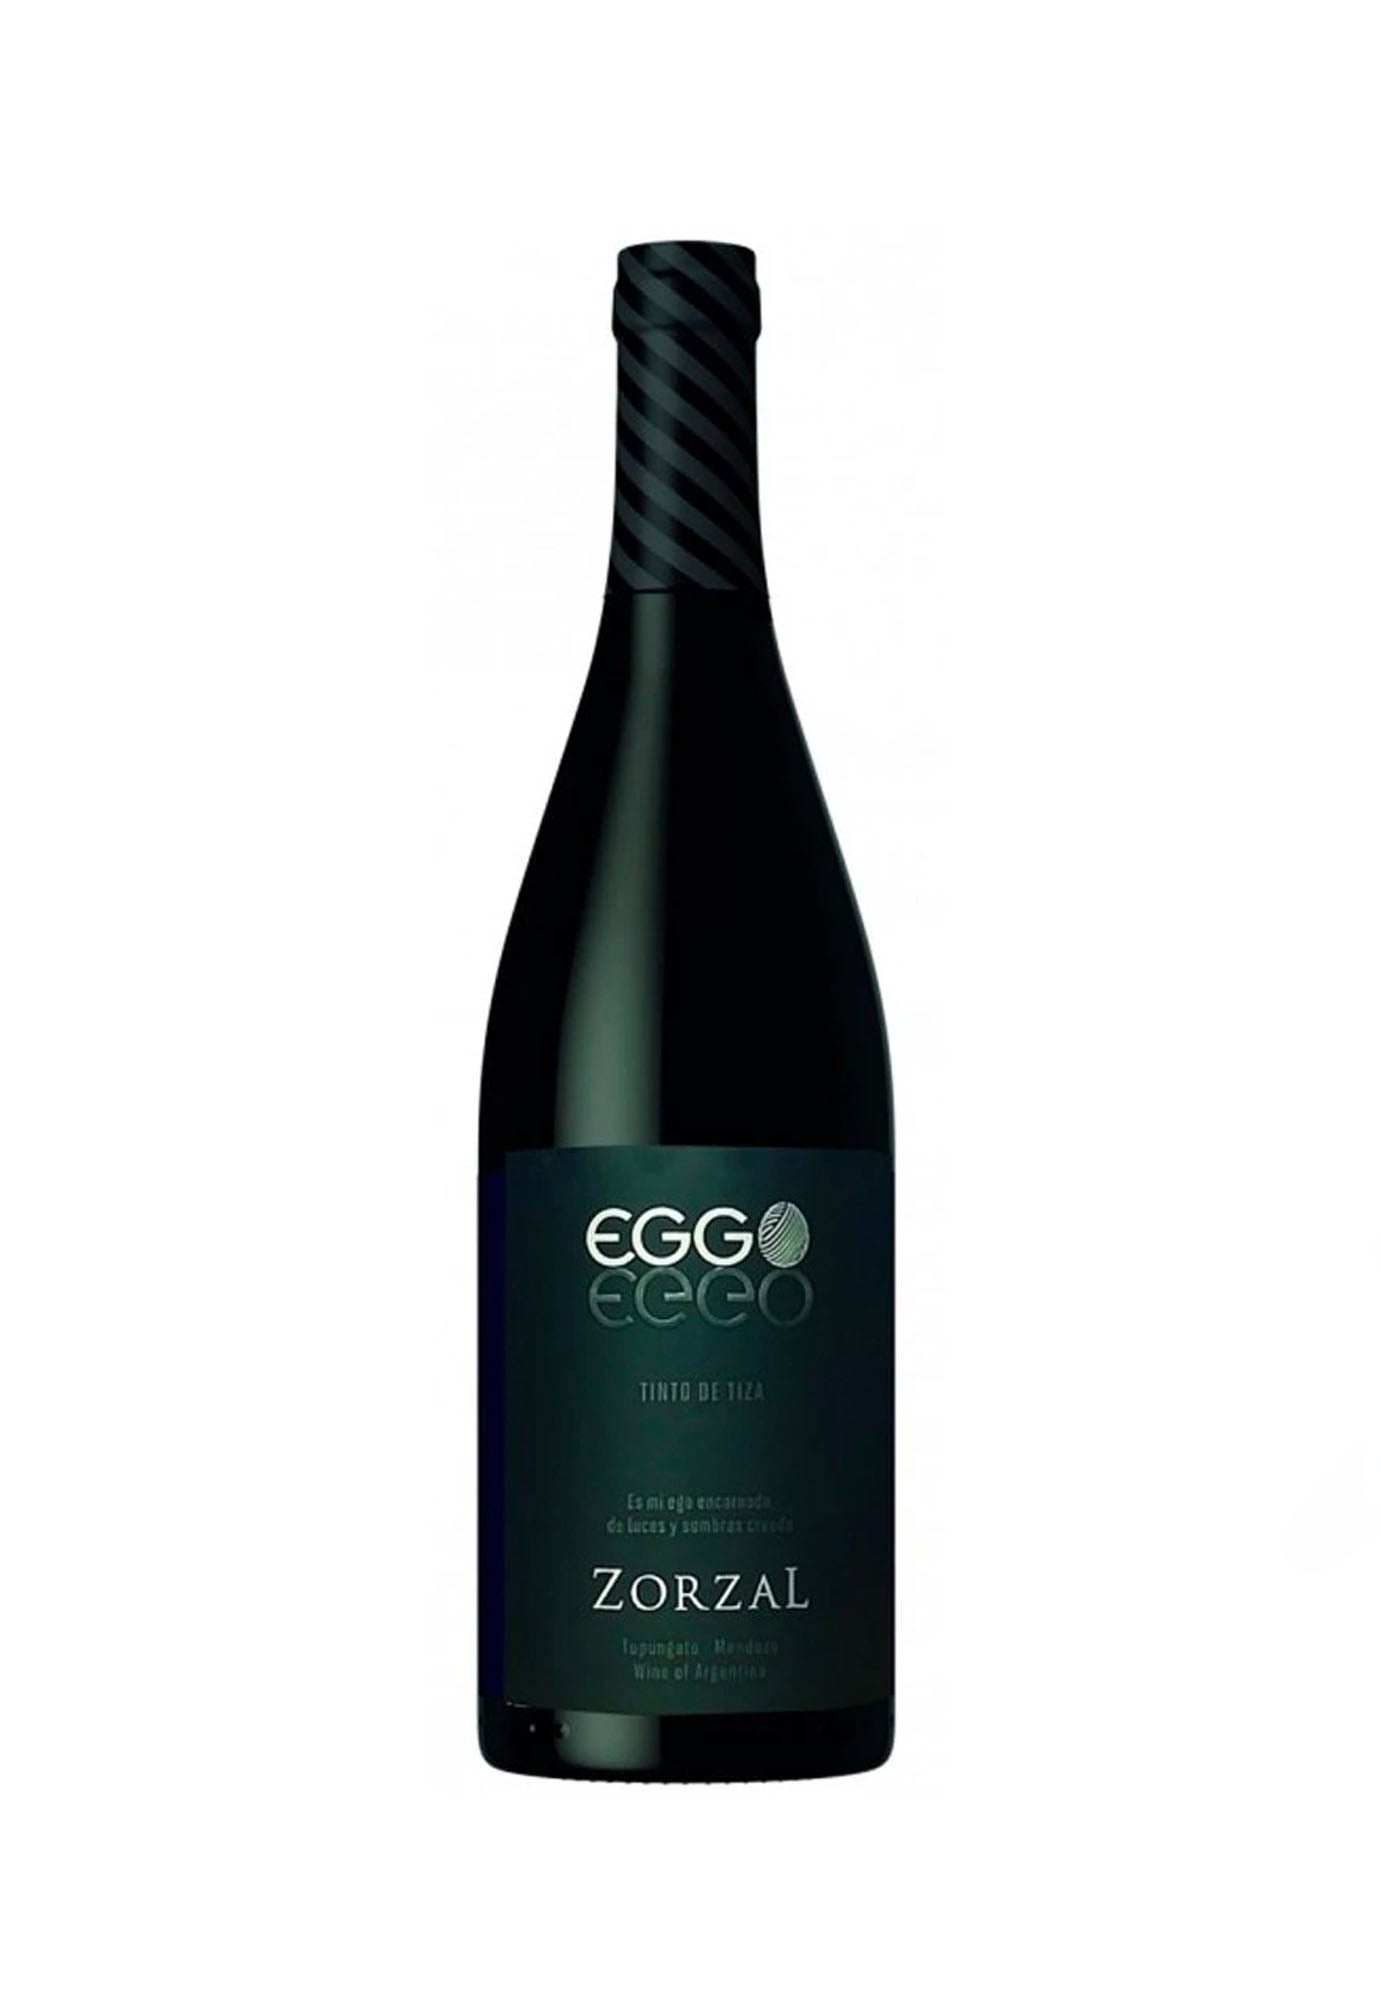 Zorzal Malbec Eggo Tinto de Tiza - 12 Bottles